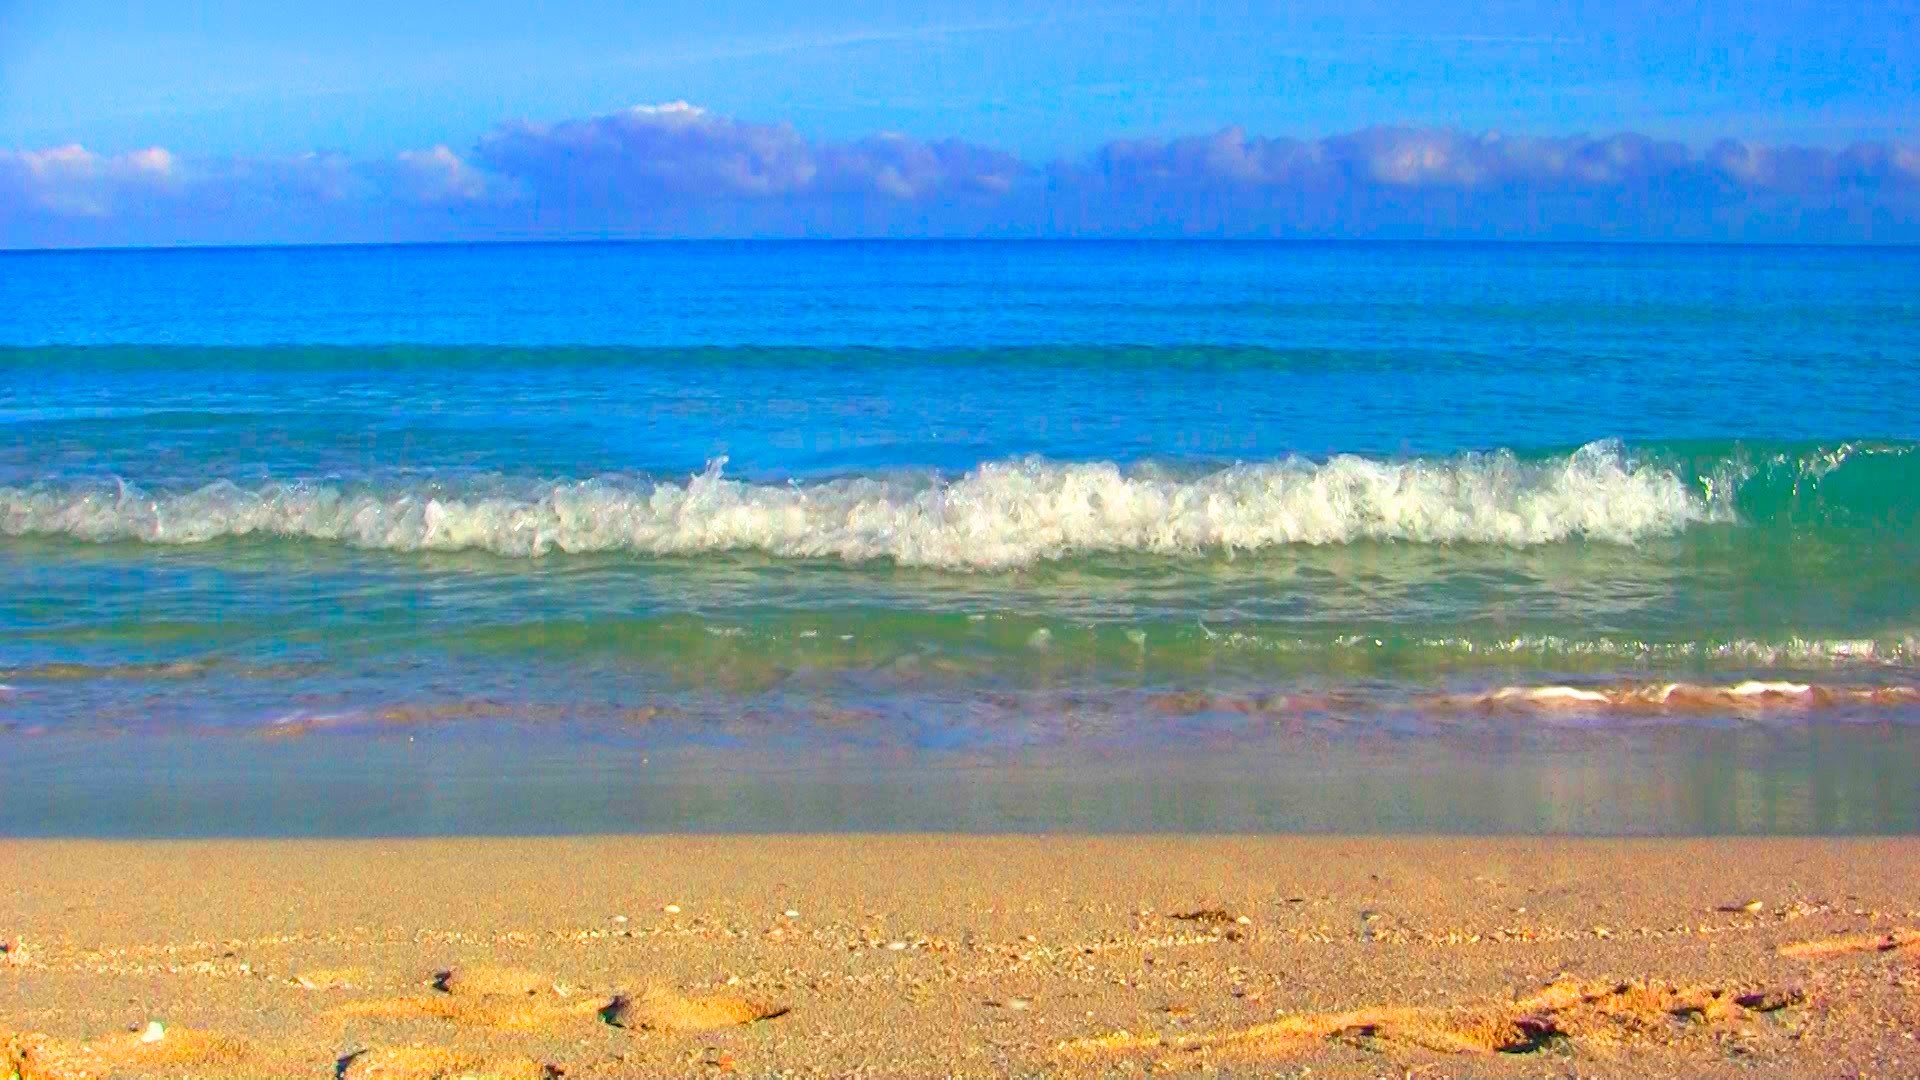 1920x1080 Varadero Beach, Cuba (With Cuban courtesy..., 2 Minutes) - Free HD Stock  Footage - YouTube